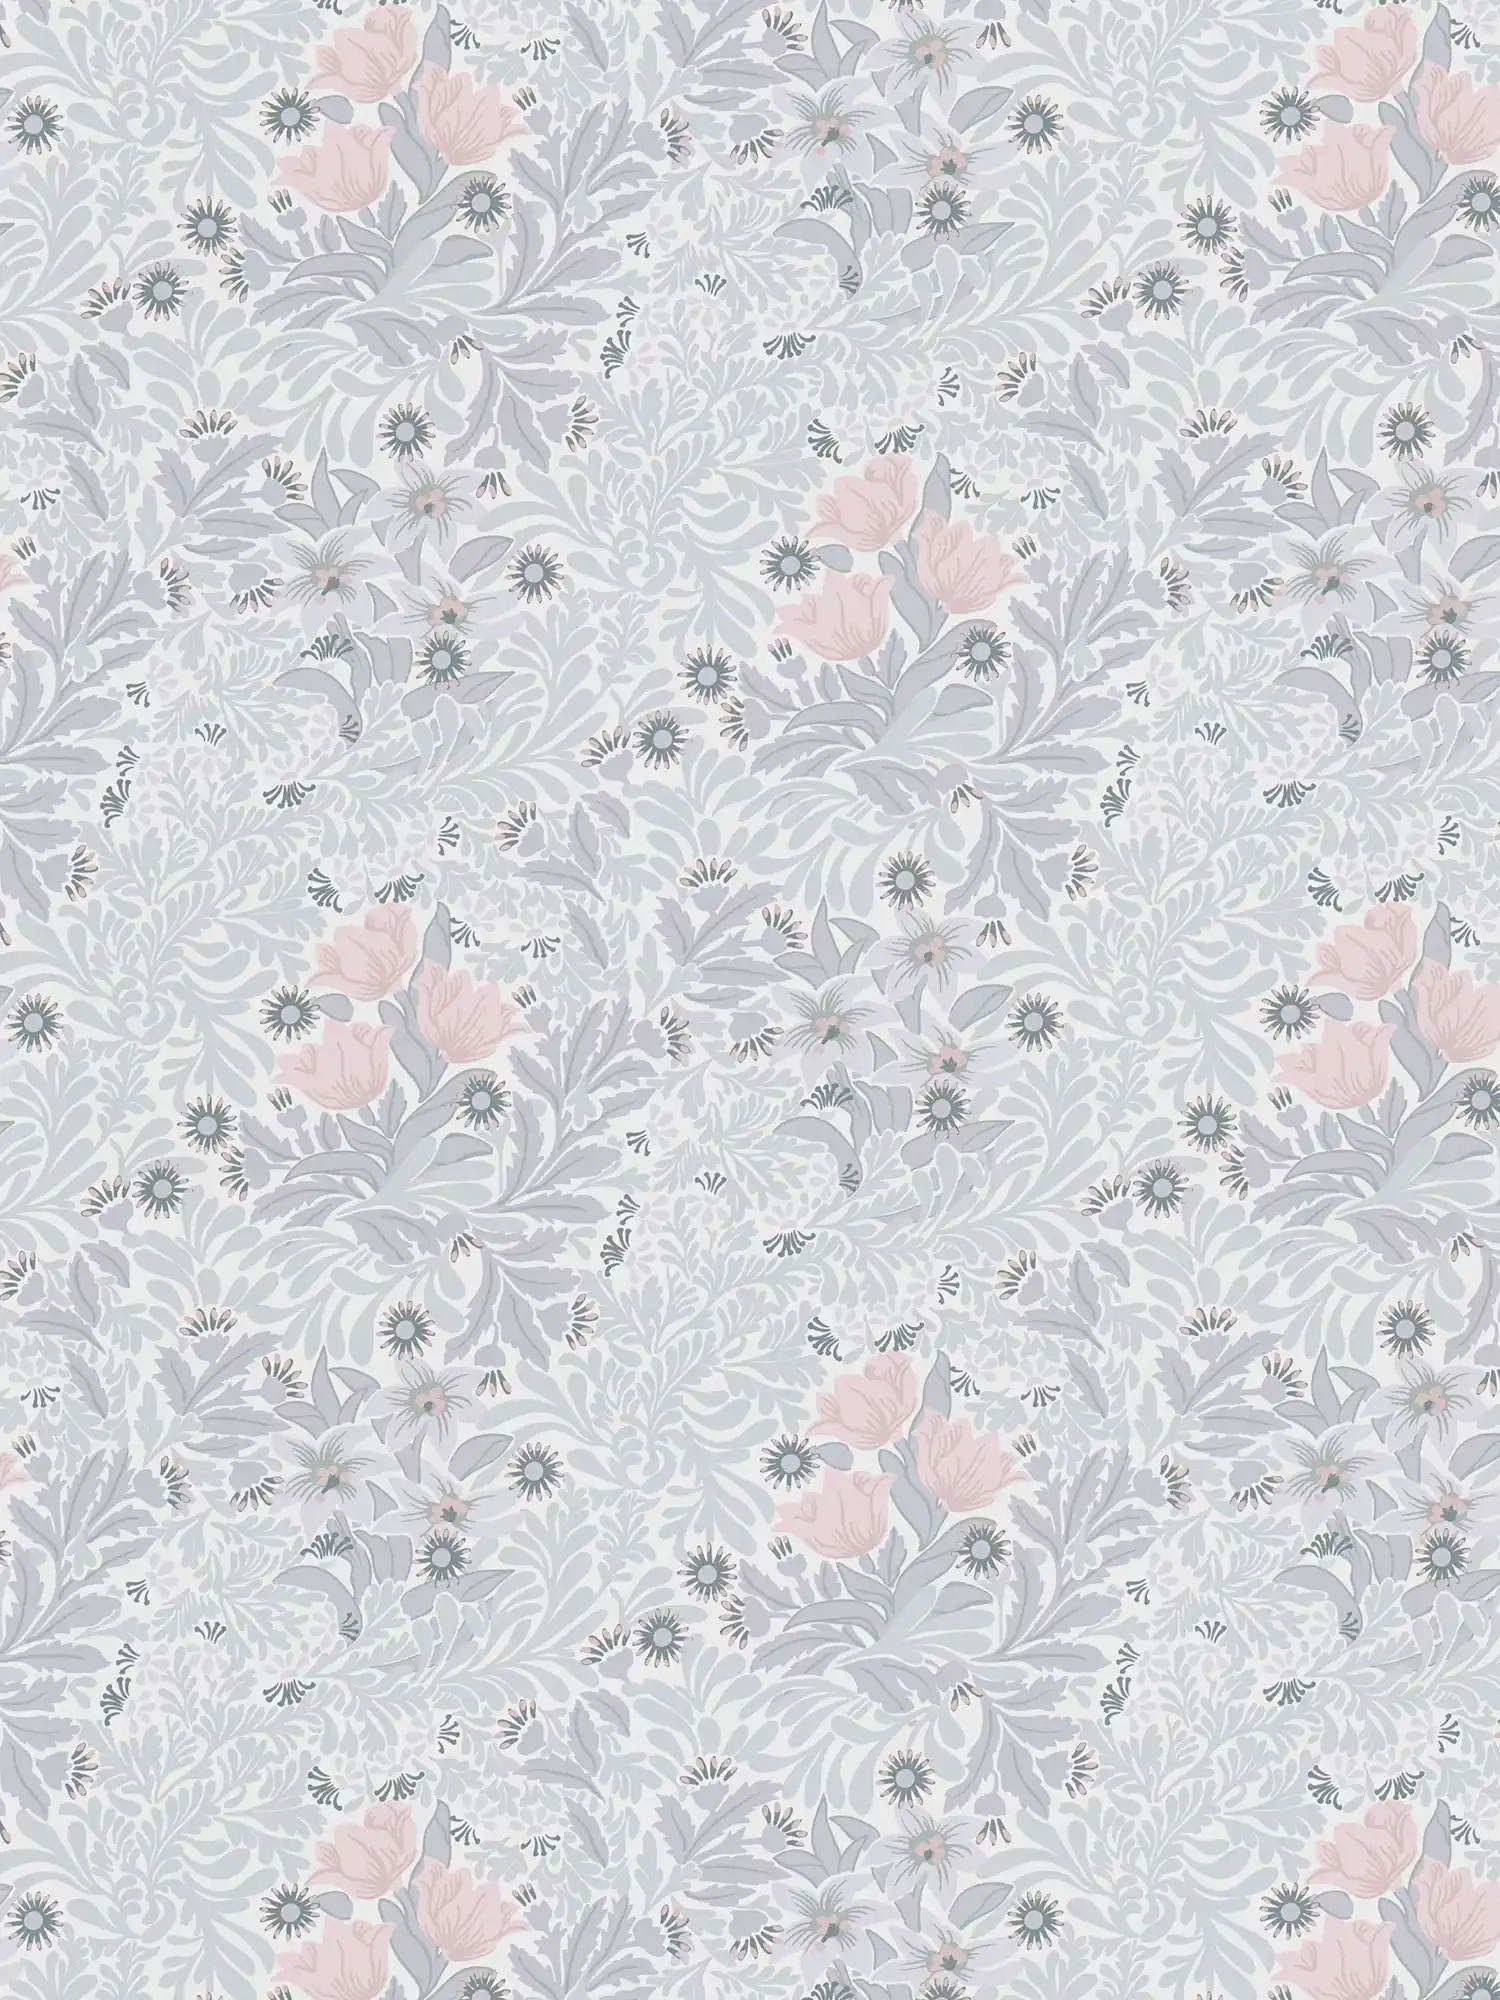         Vliestapete mit floralem Muster in sanften Farbtönen – Grau, Rosa, Weiß
    